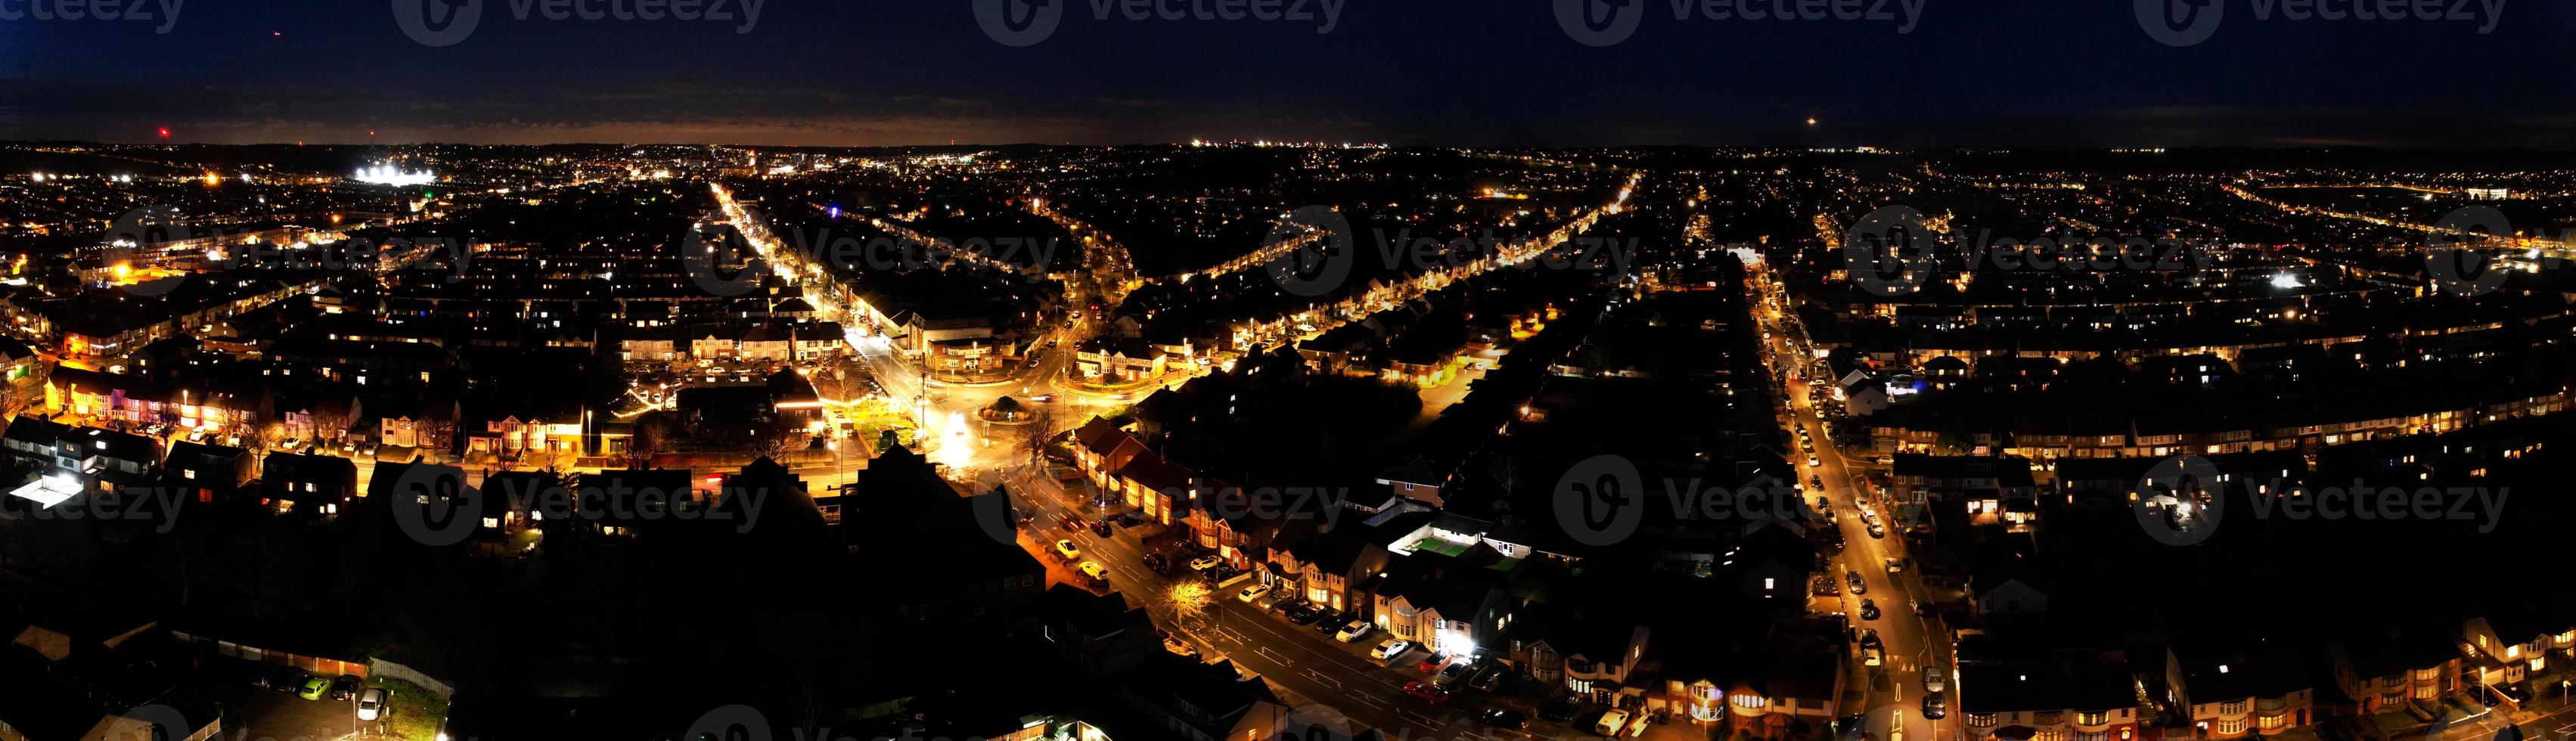 prachtige nachtelijke luchtfoto van de britse stad, hoge hoek drone's beelden van luton stad van engeland uk foto